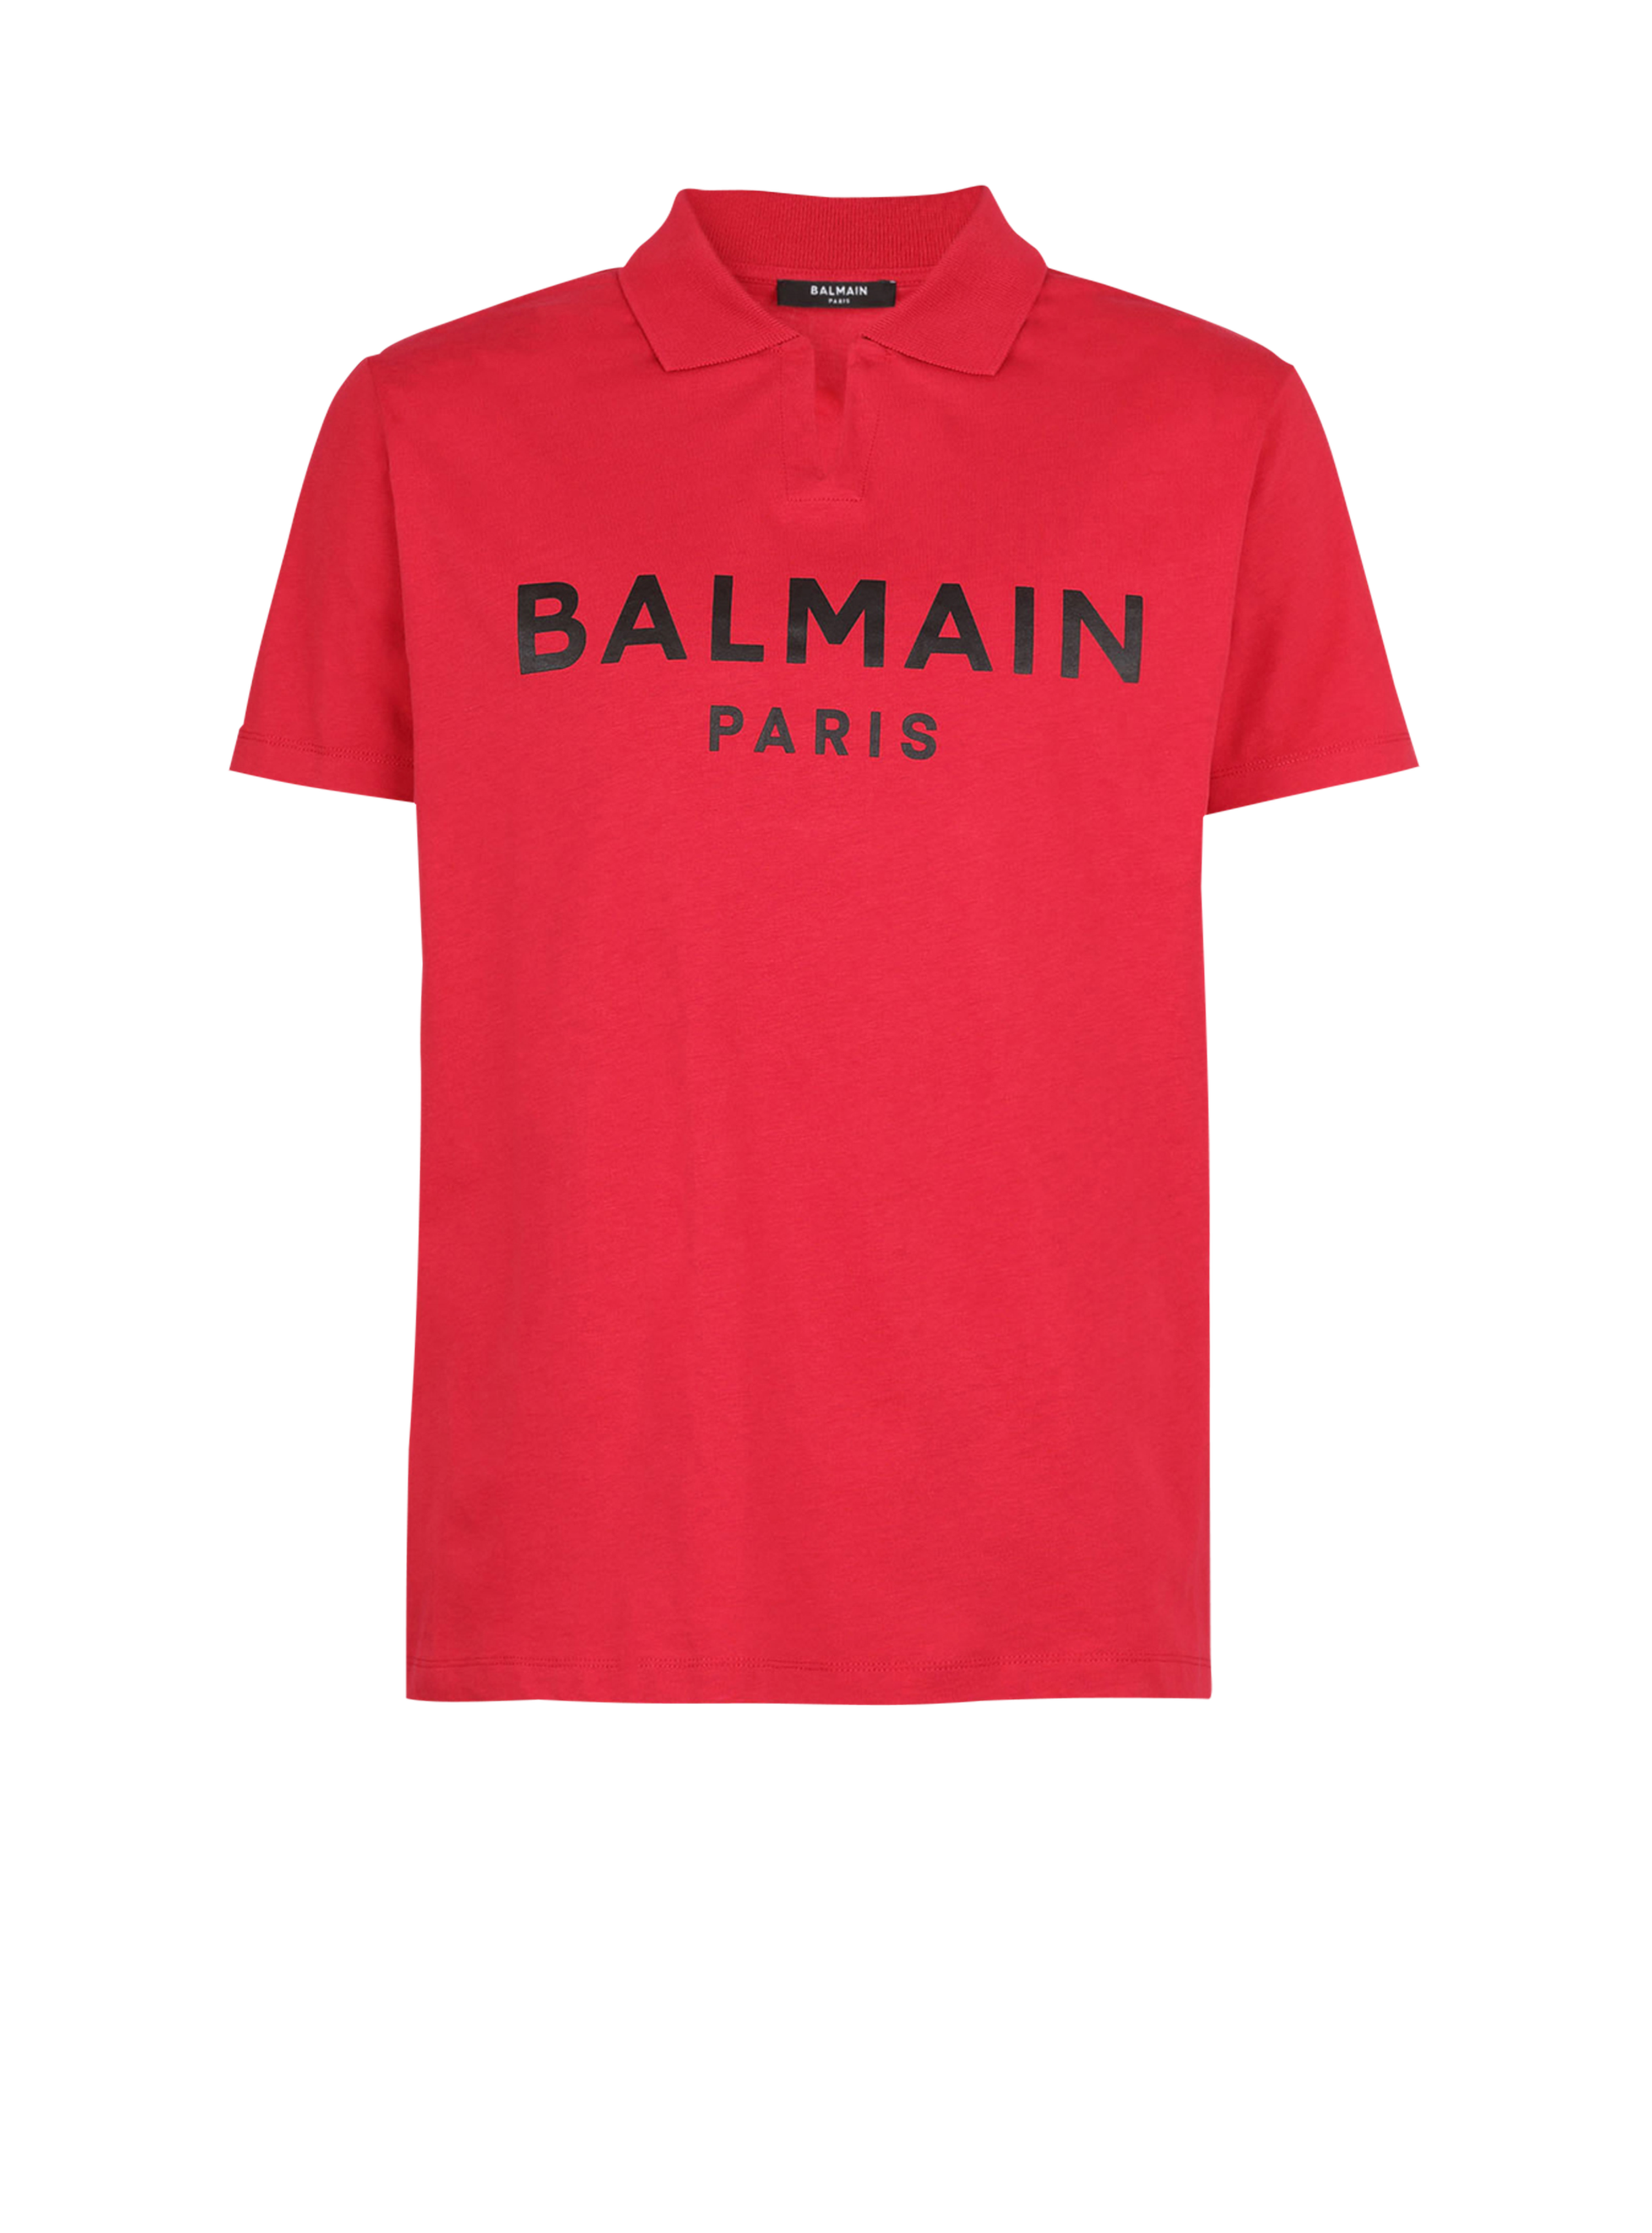 Polo en coton éco-design imprimé logo Balmain, rouge